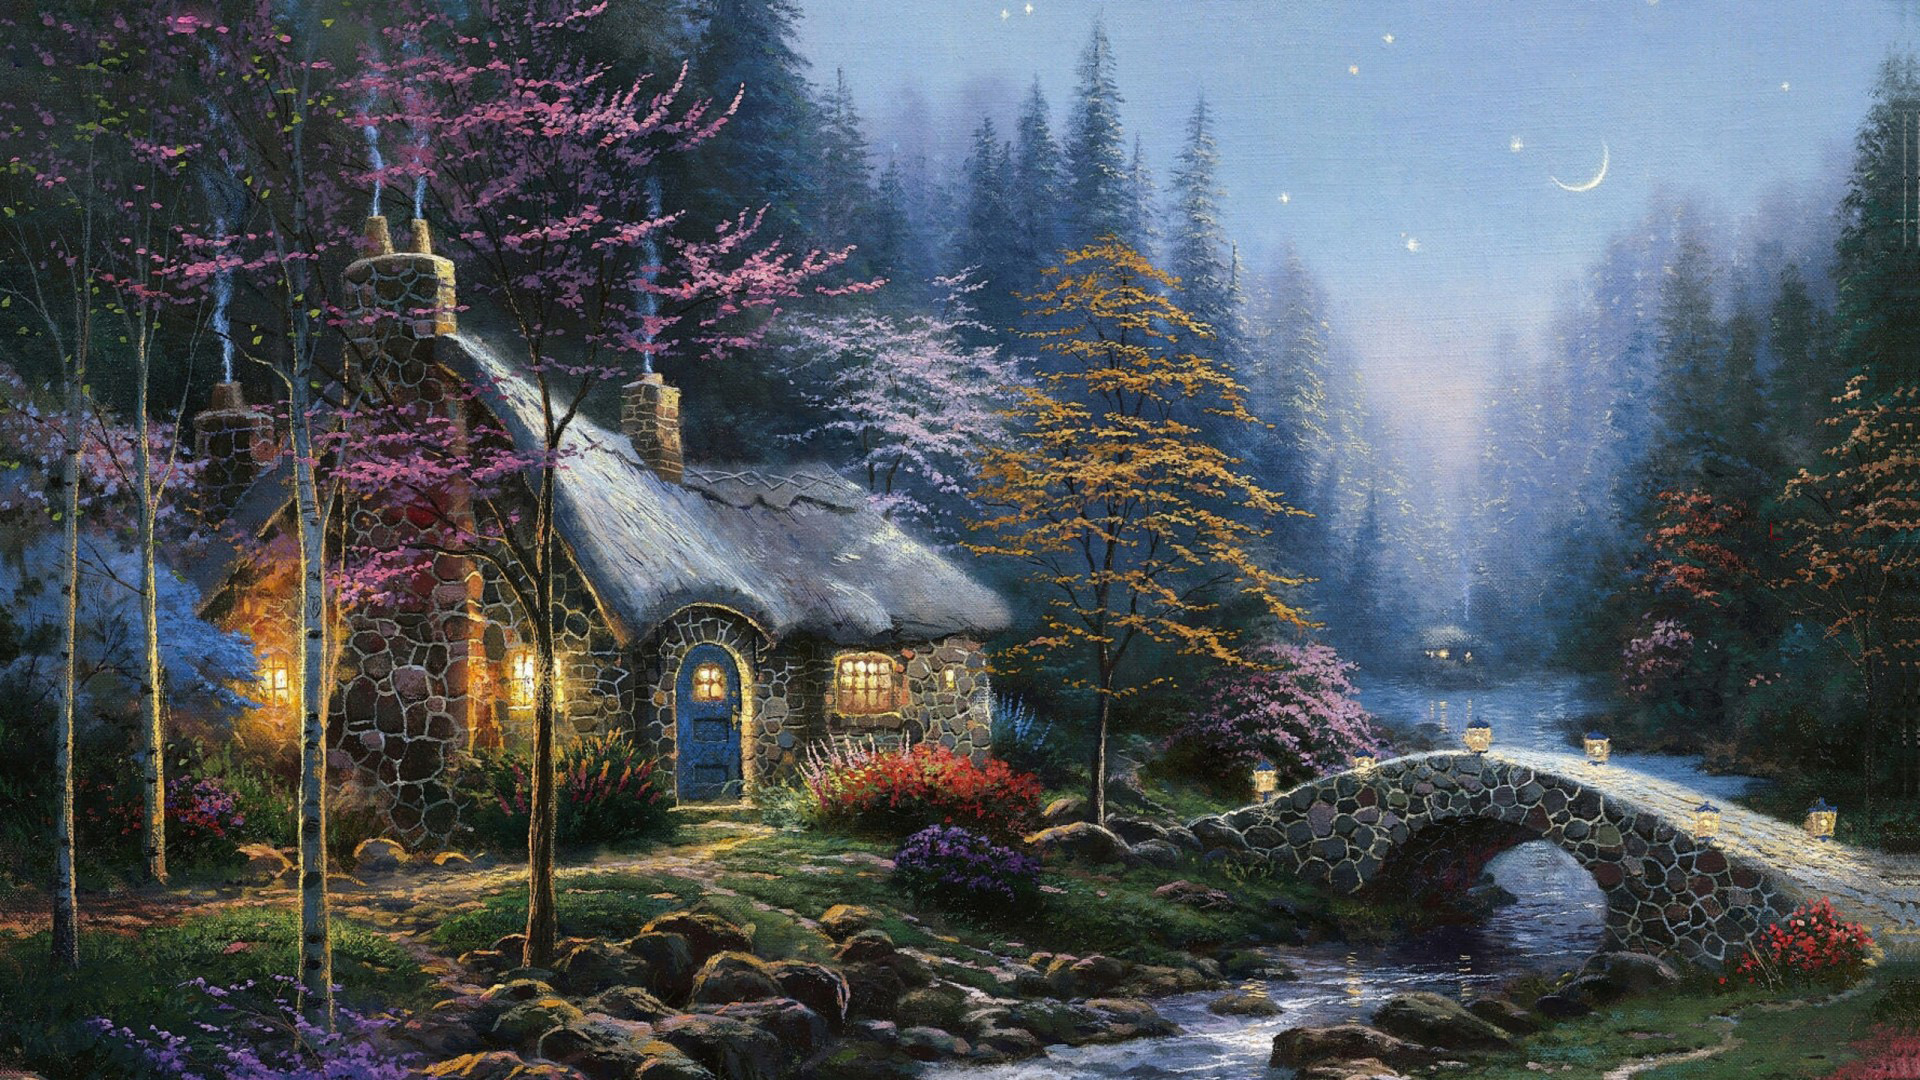 托马斯绘画,夜晚的森林,小屋,溪水,小桥,月亮,星星,意境壁纸